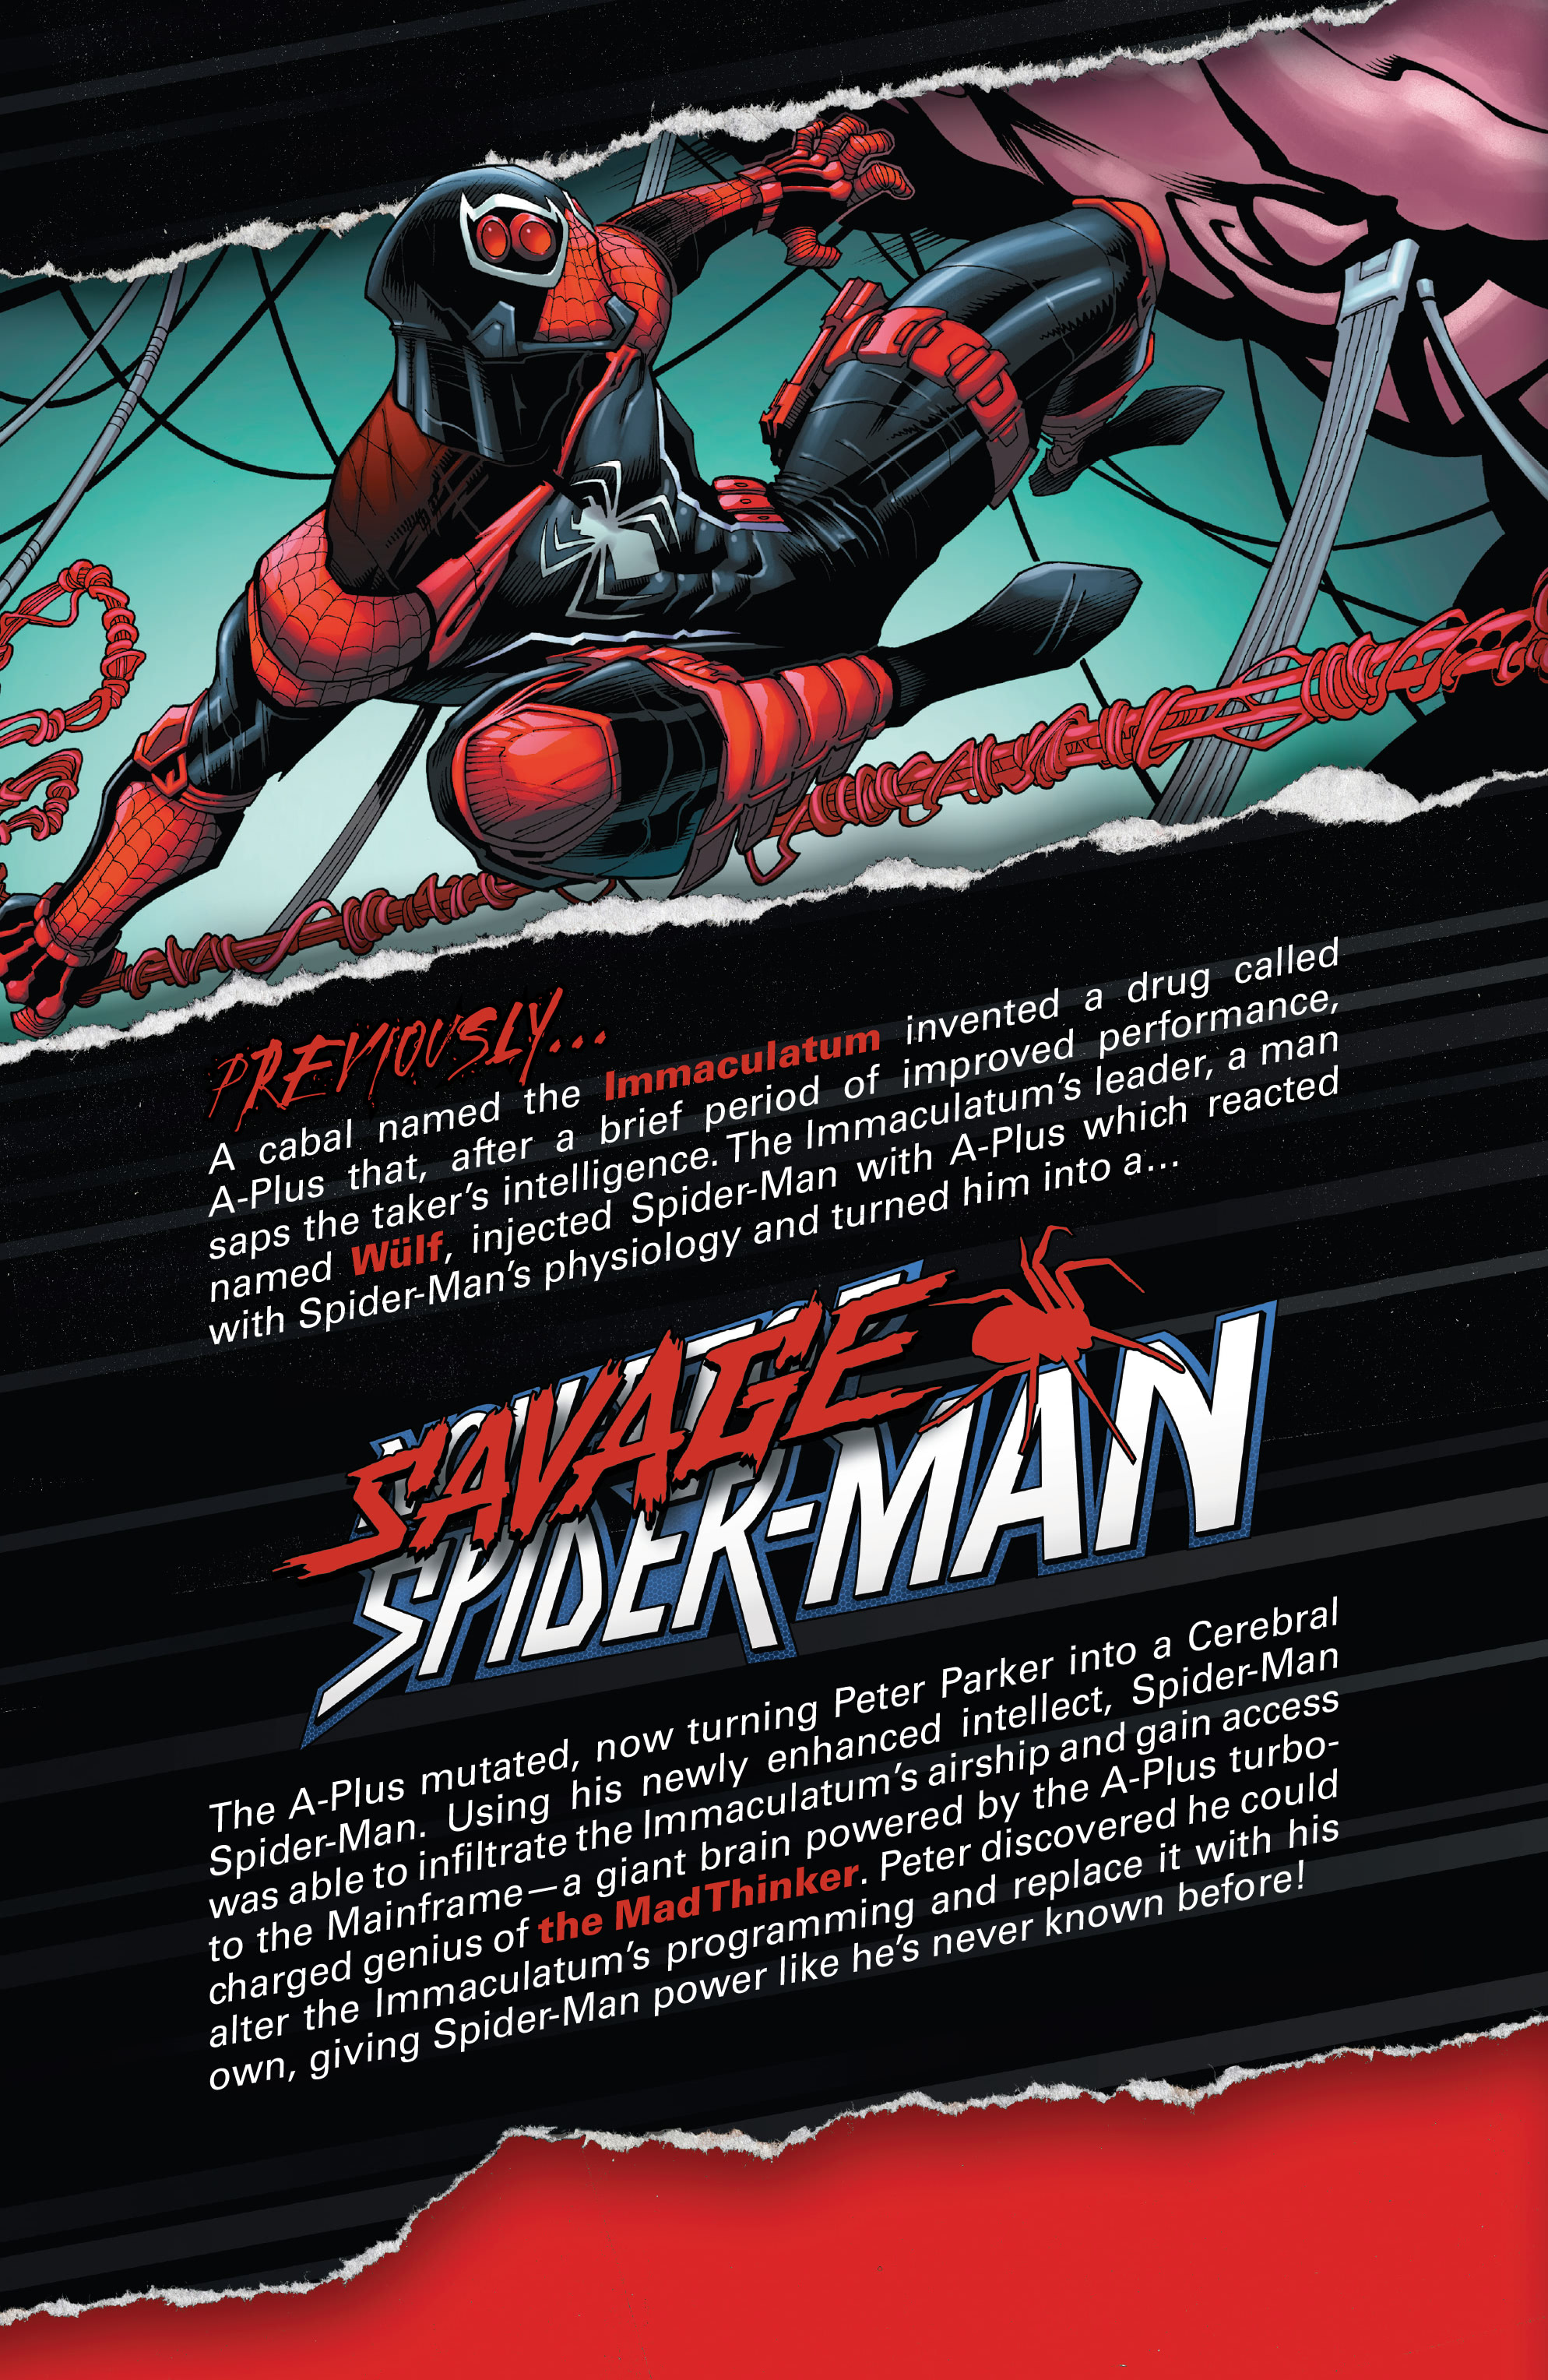 Read online Savage Spider-Man comic -  Issue #5 - 4